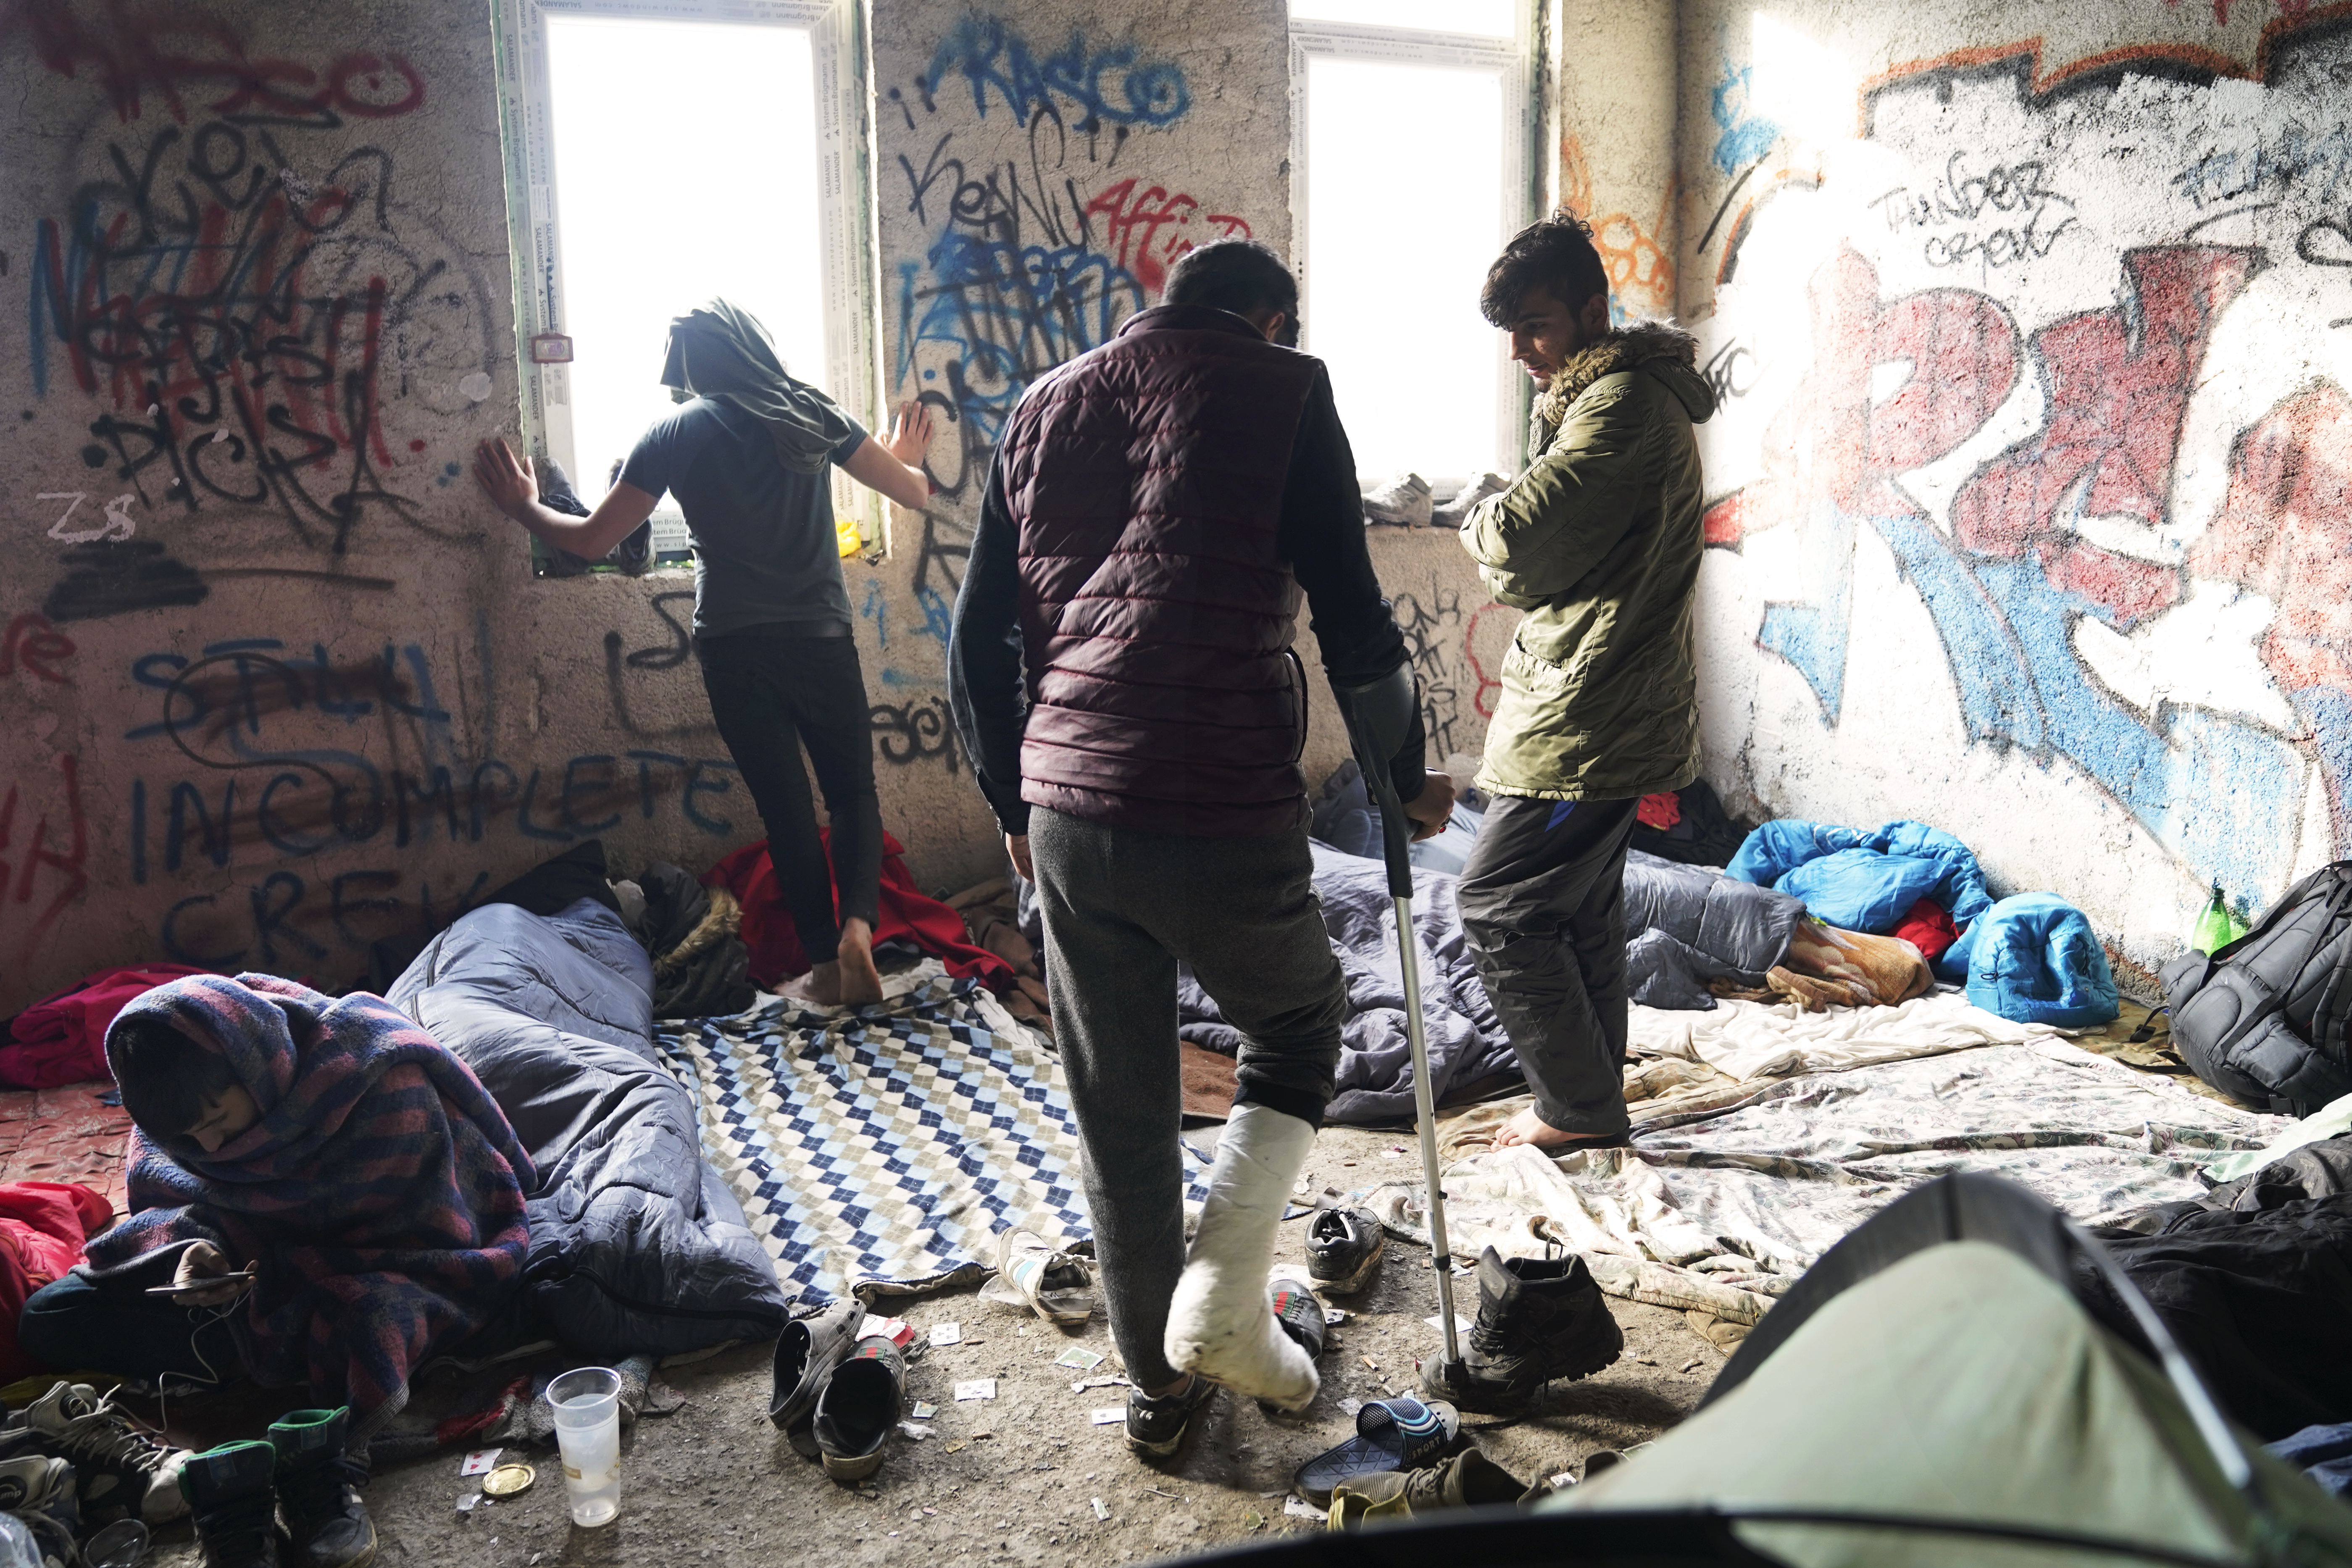 n.1: Un gruppo di ragazzi rifugiati nel centro di accoglienza provvisorio nella periferia di Bihac, uno di loro riporta una ferita alla gamba causata dallo scontro con la polizia croata (Foto di Paolo Amedei)